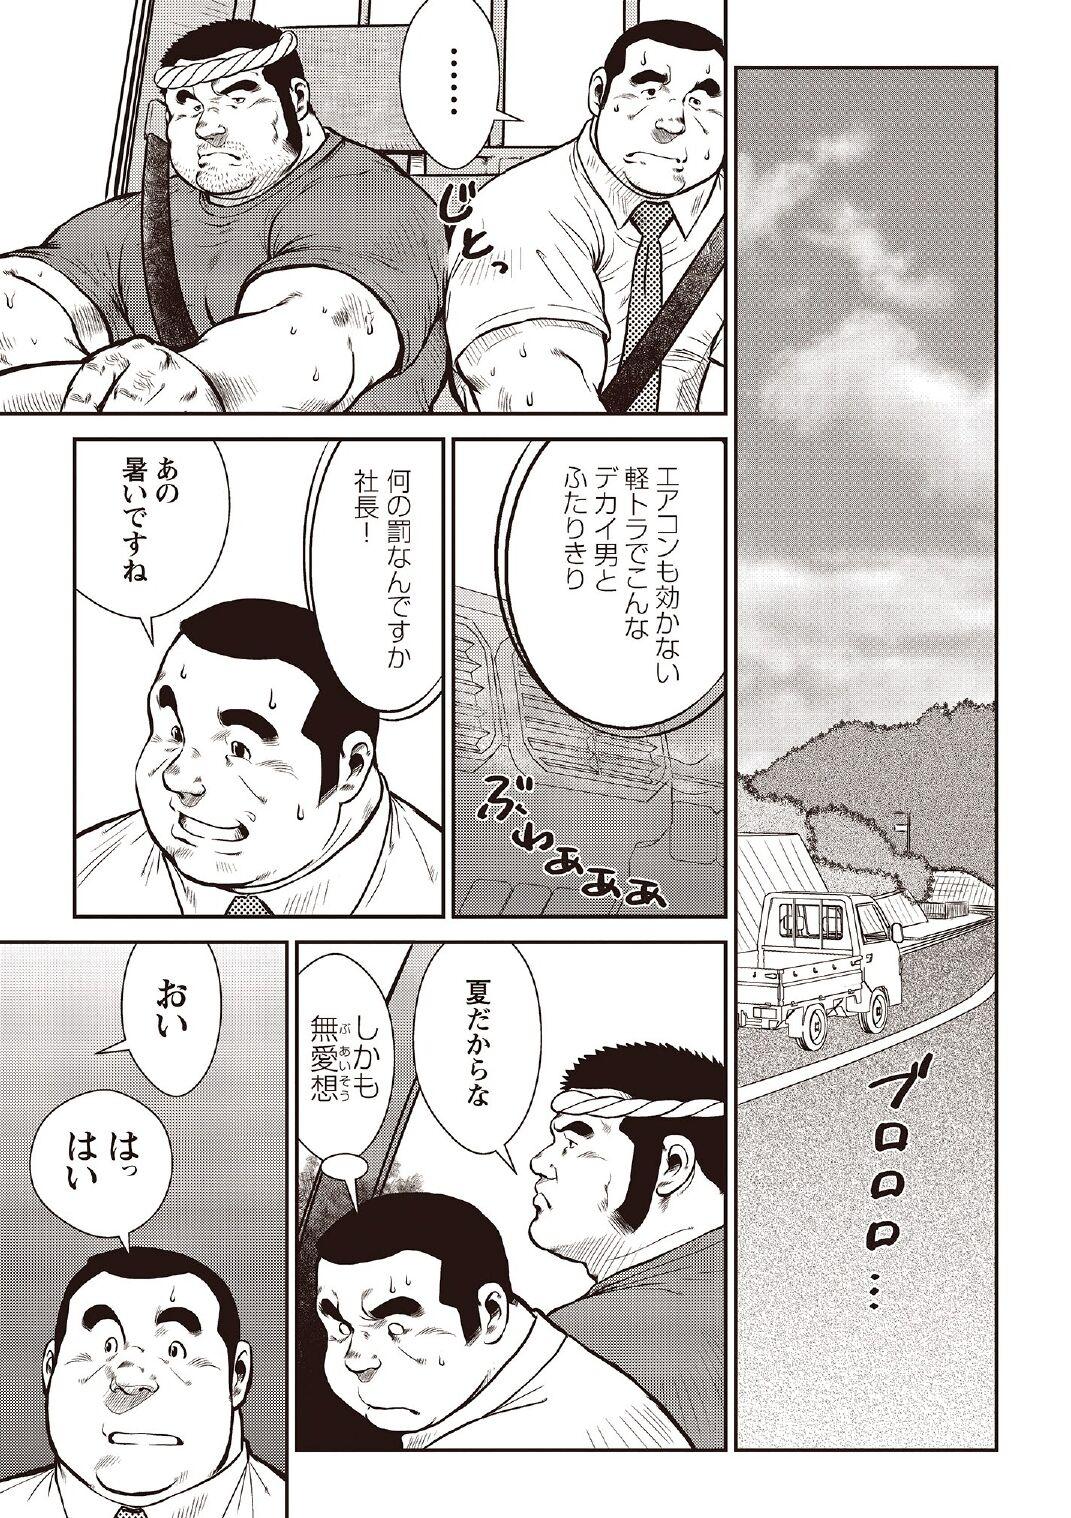 [Ebisubashi Seizou] Ebisubashi Seizou Tanpen Manga Shuu 2 Fuuun! Danshi Ryou [Bunsatsuban] PART 2 Bousou Hantou Taifuu Zensen Ch. 1 + Ch. 2 [Digital] 2